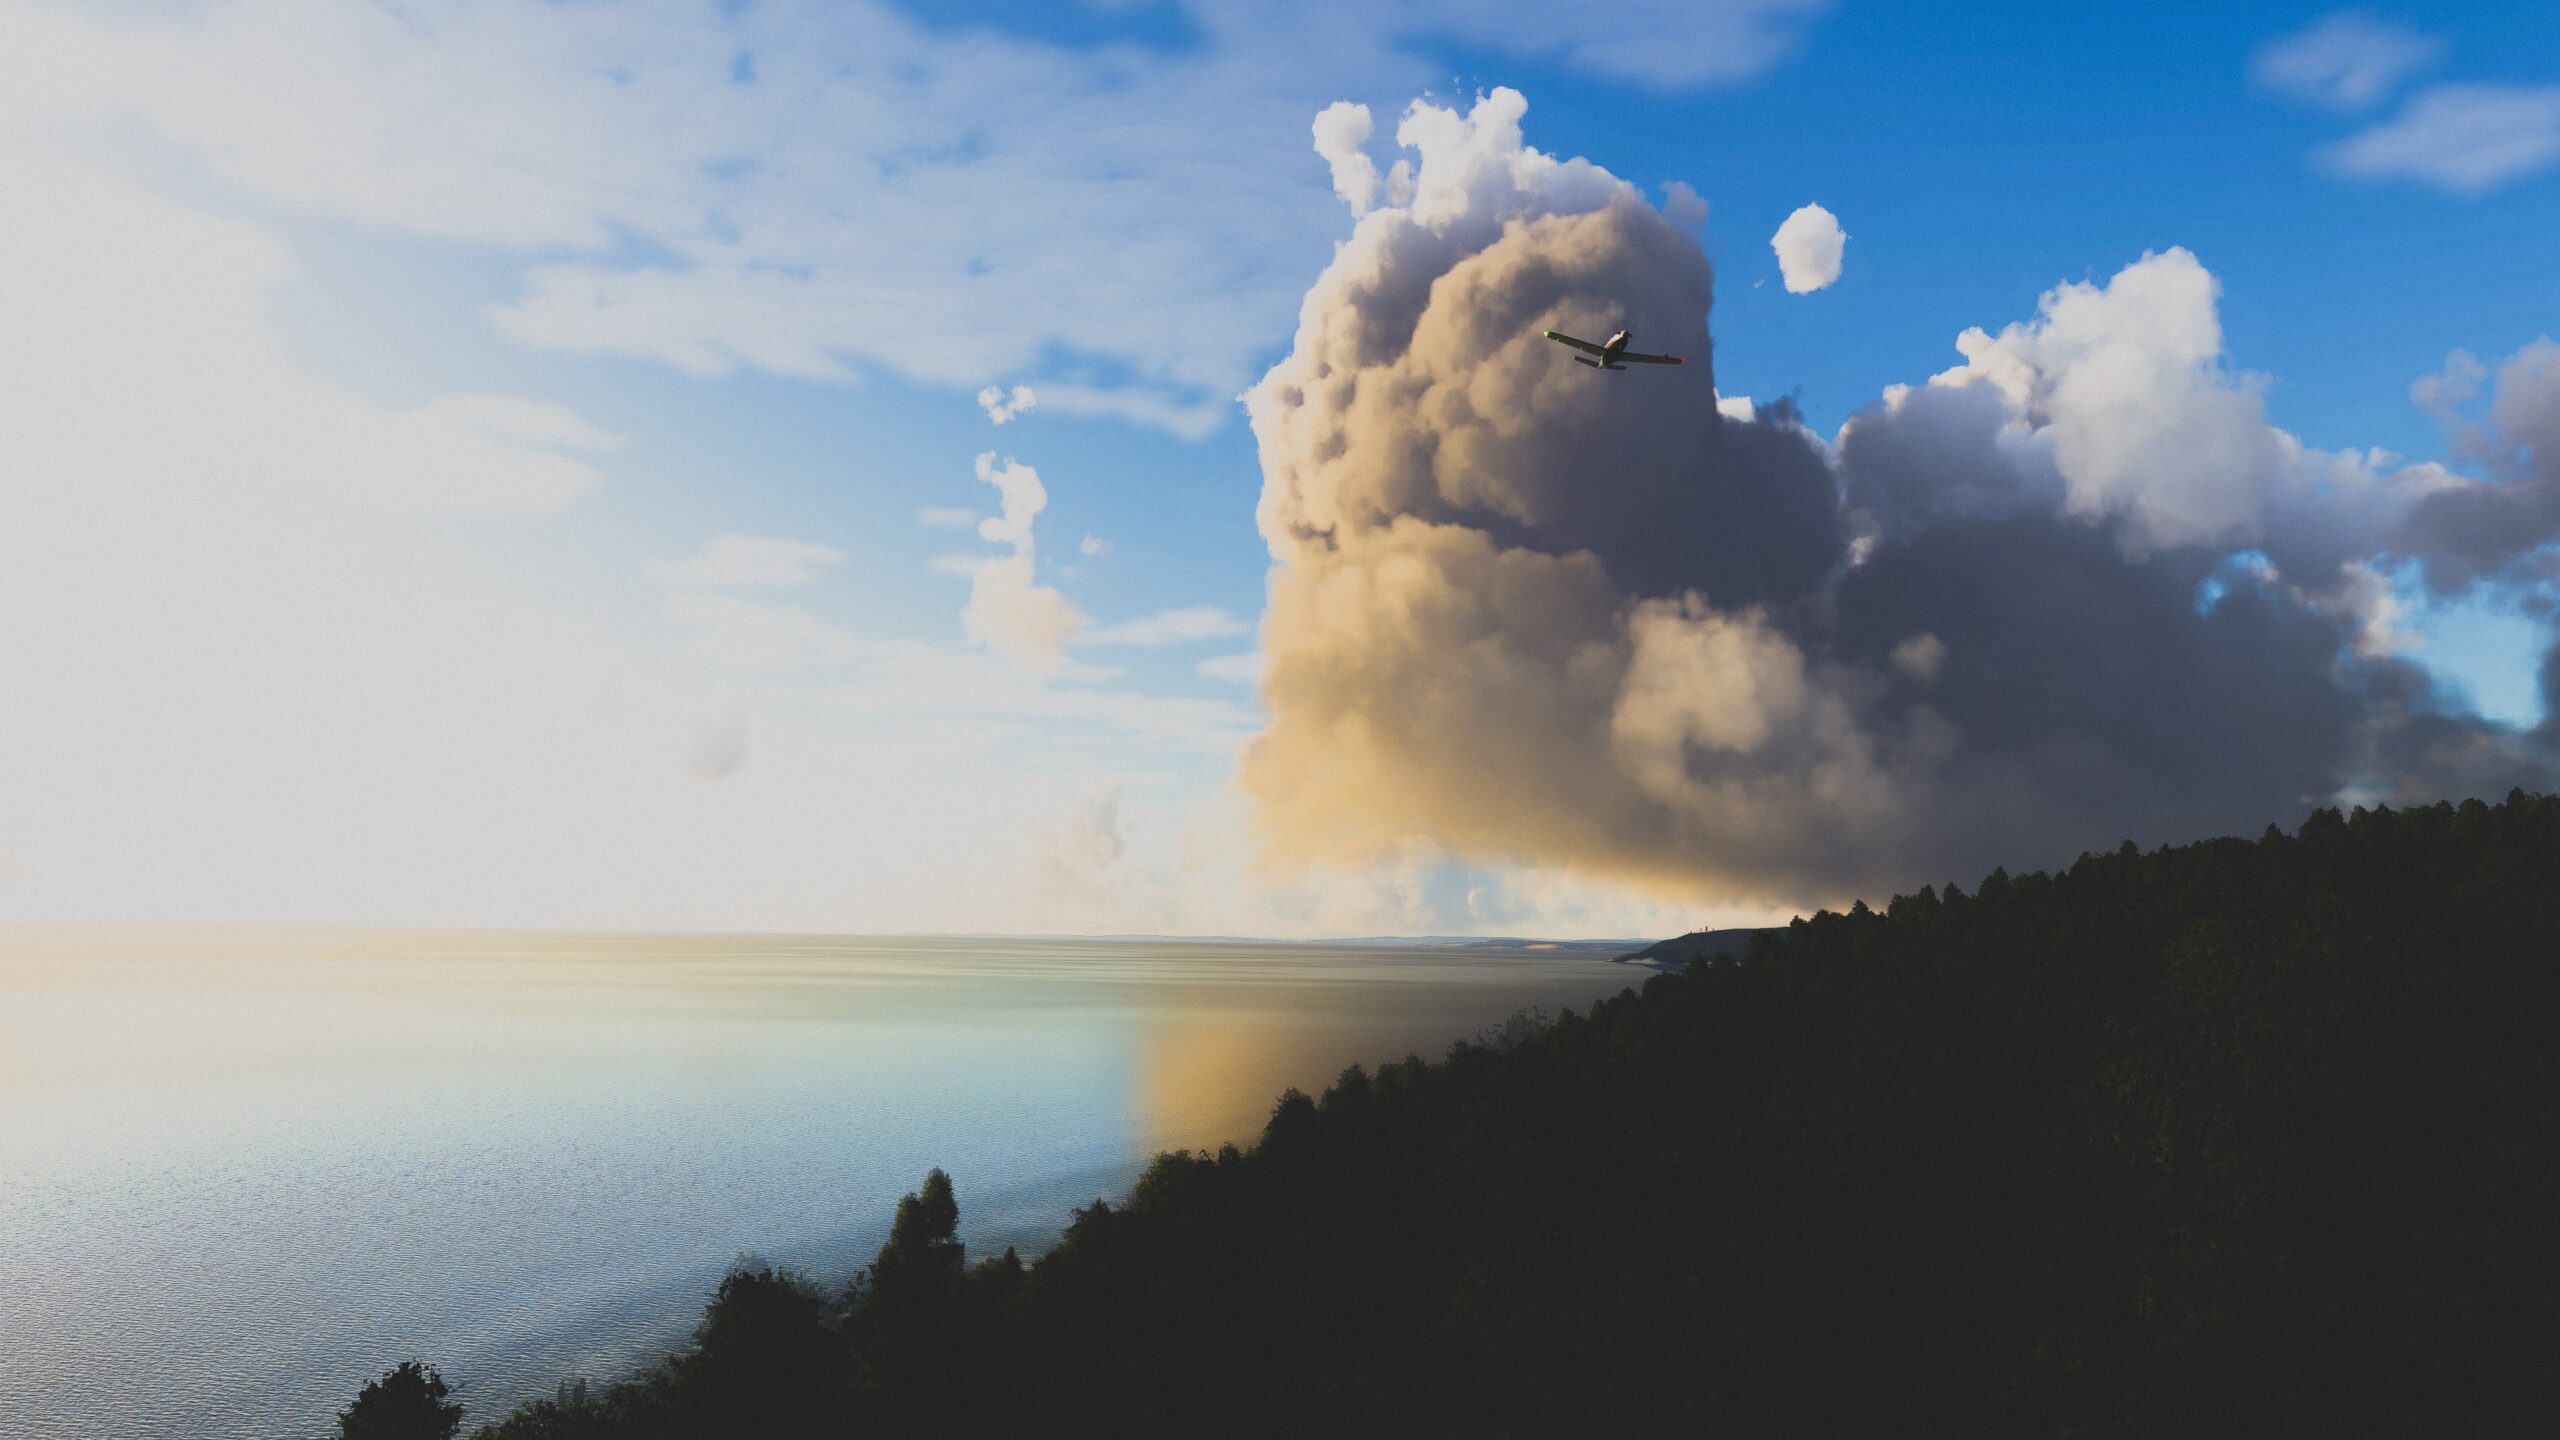 Aereo Microsoft Flight Simulator che vola davanti a una nuvola gigante da scogliere e alberi